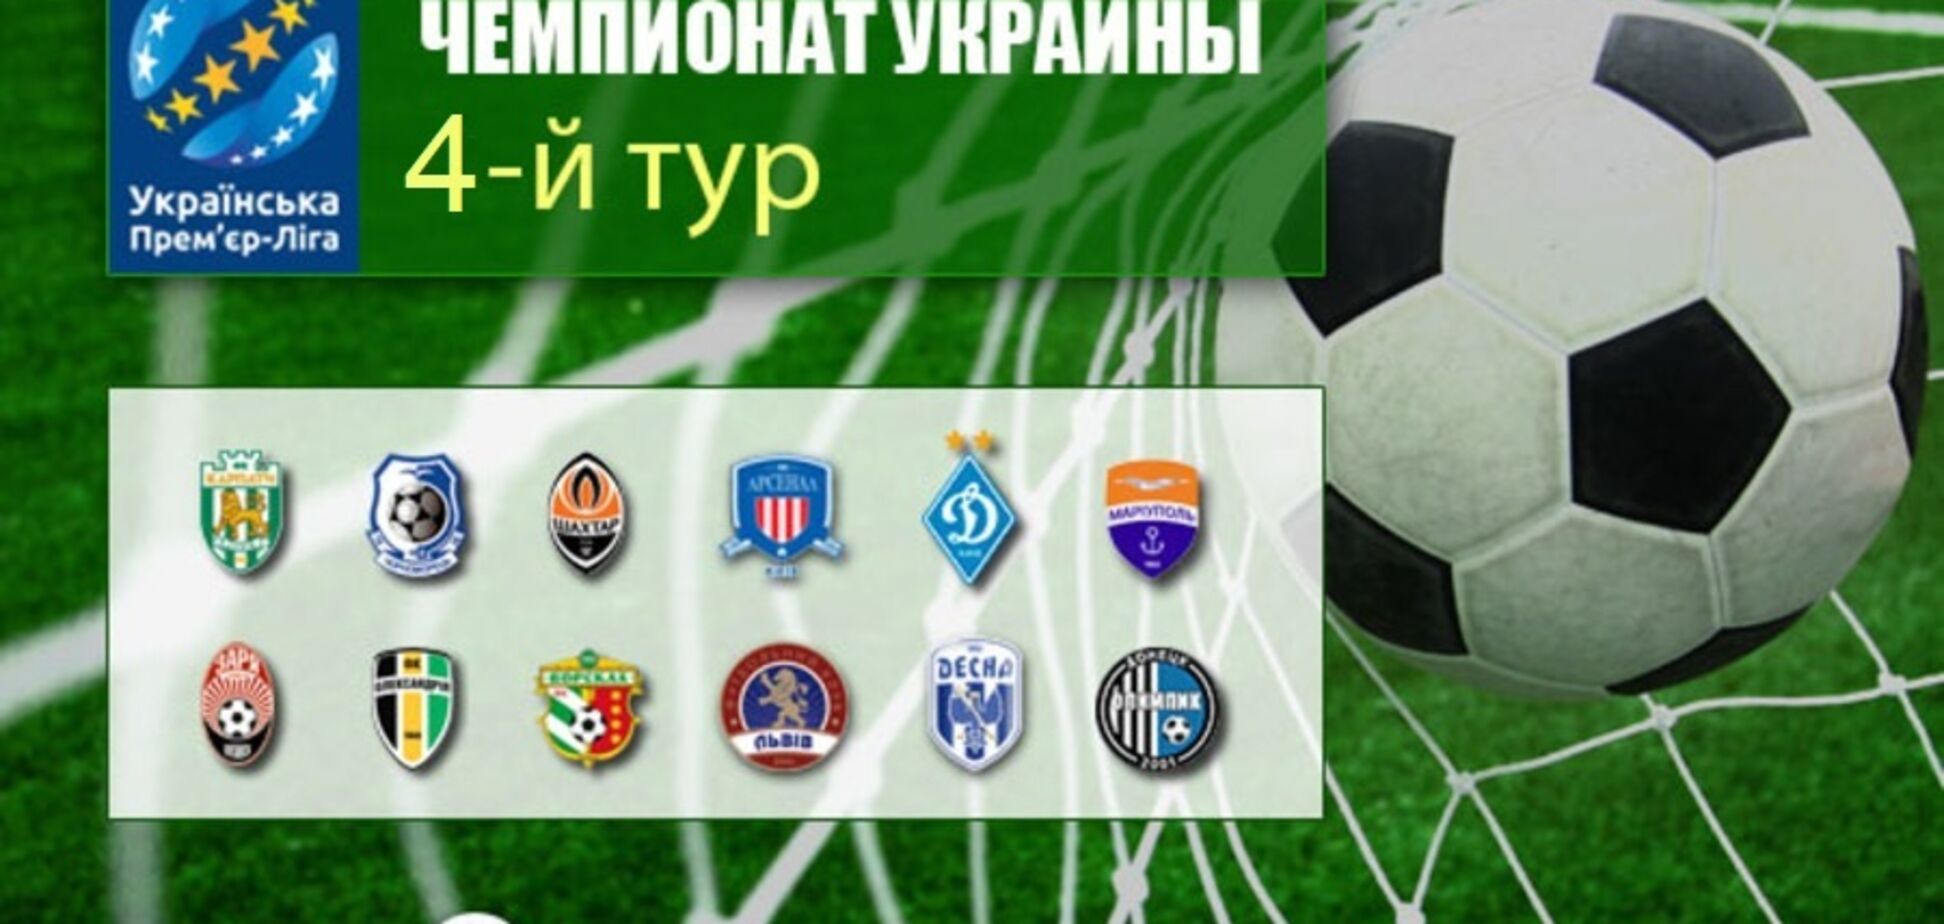 4-й тур чемпіонату України з футболу: де дивитися, результати і розклад